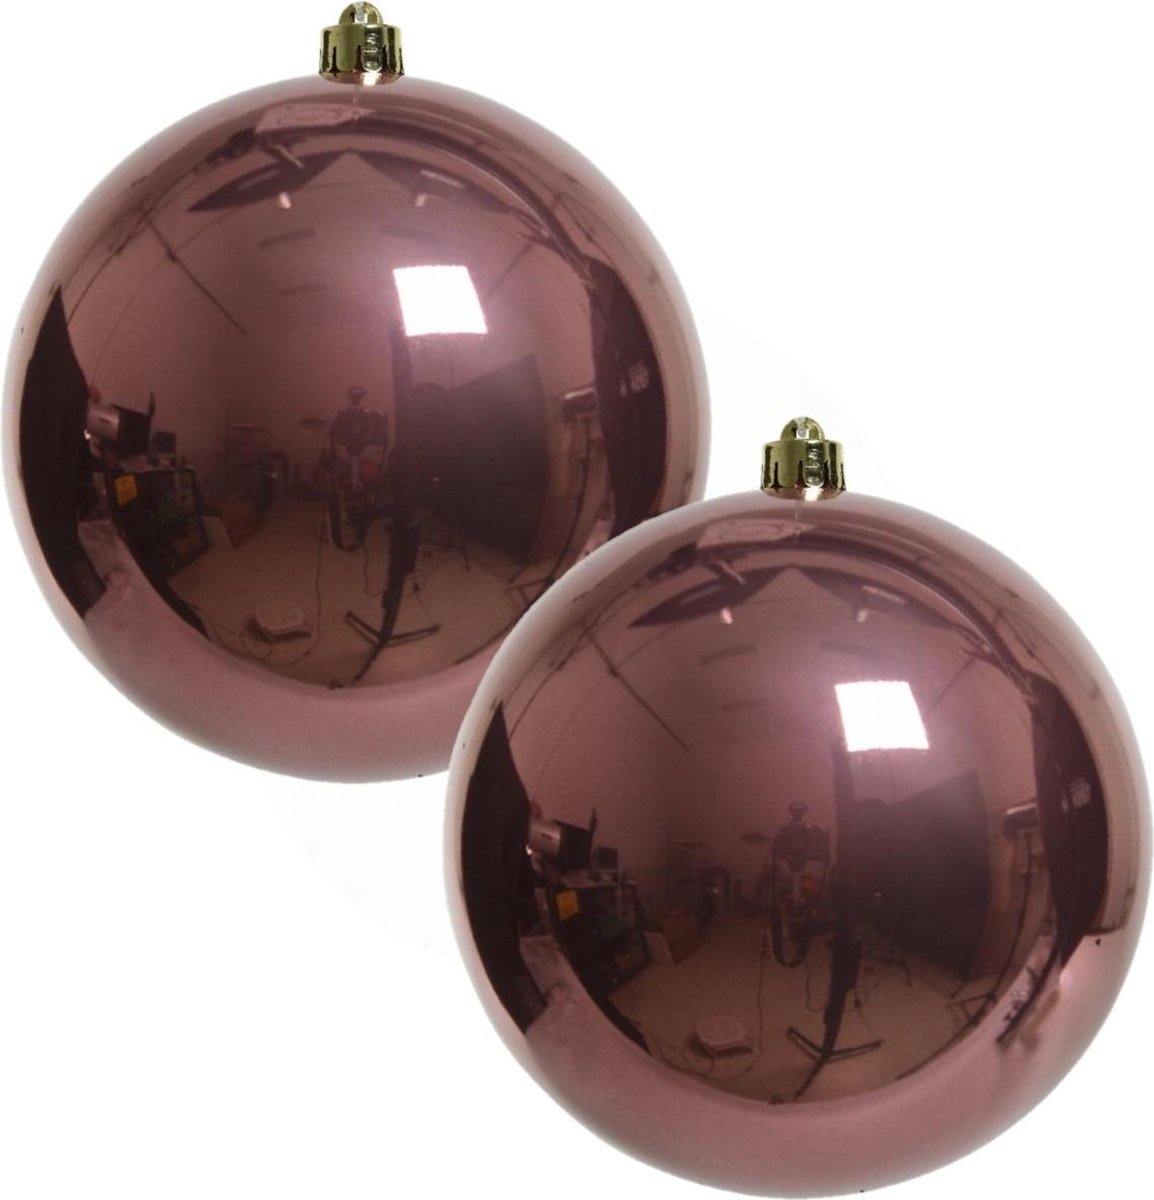 2x Grote oud roze kunststof kerstballen van 20 cm - glans - oud roze kerstballen - Kerstversiering